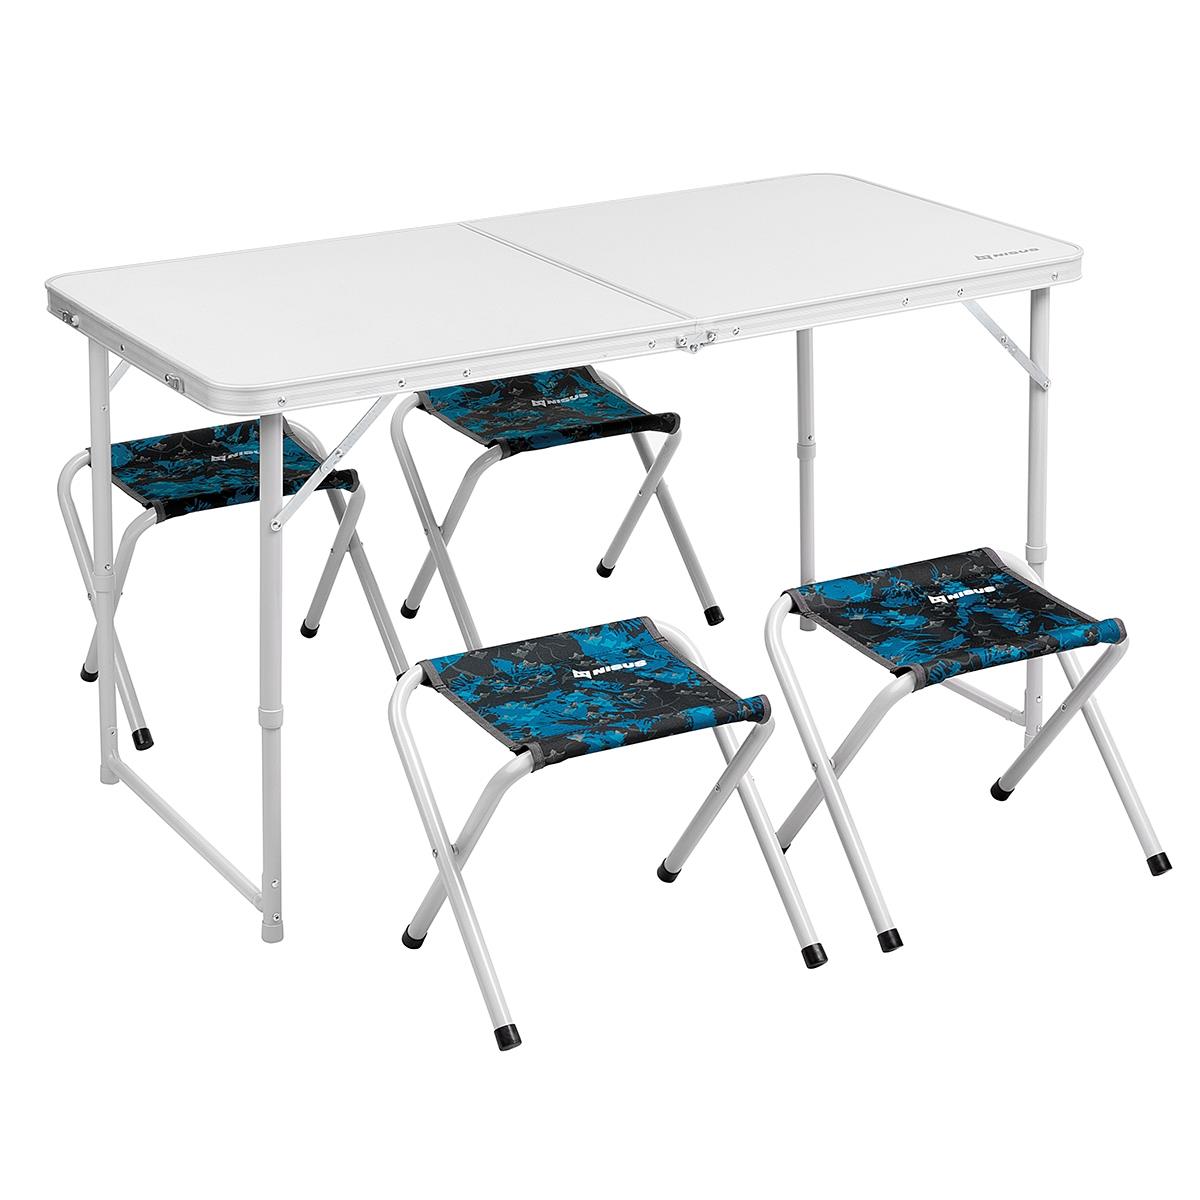 Набор мебели алюминиевый в чехле, стол + 4 табурета SHARK (N-FS-21407+21124A-S-1) (пр-во Тонар) Nisus алюминиевый координатный стол технореал